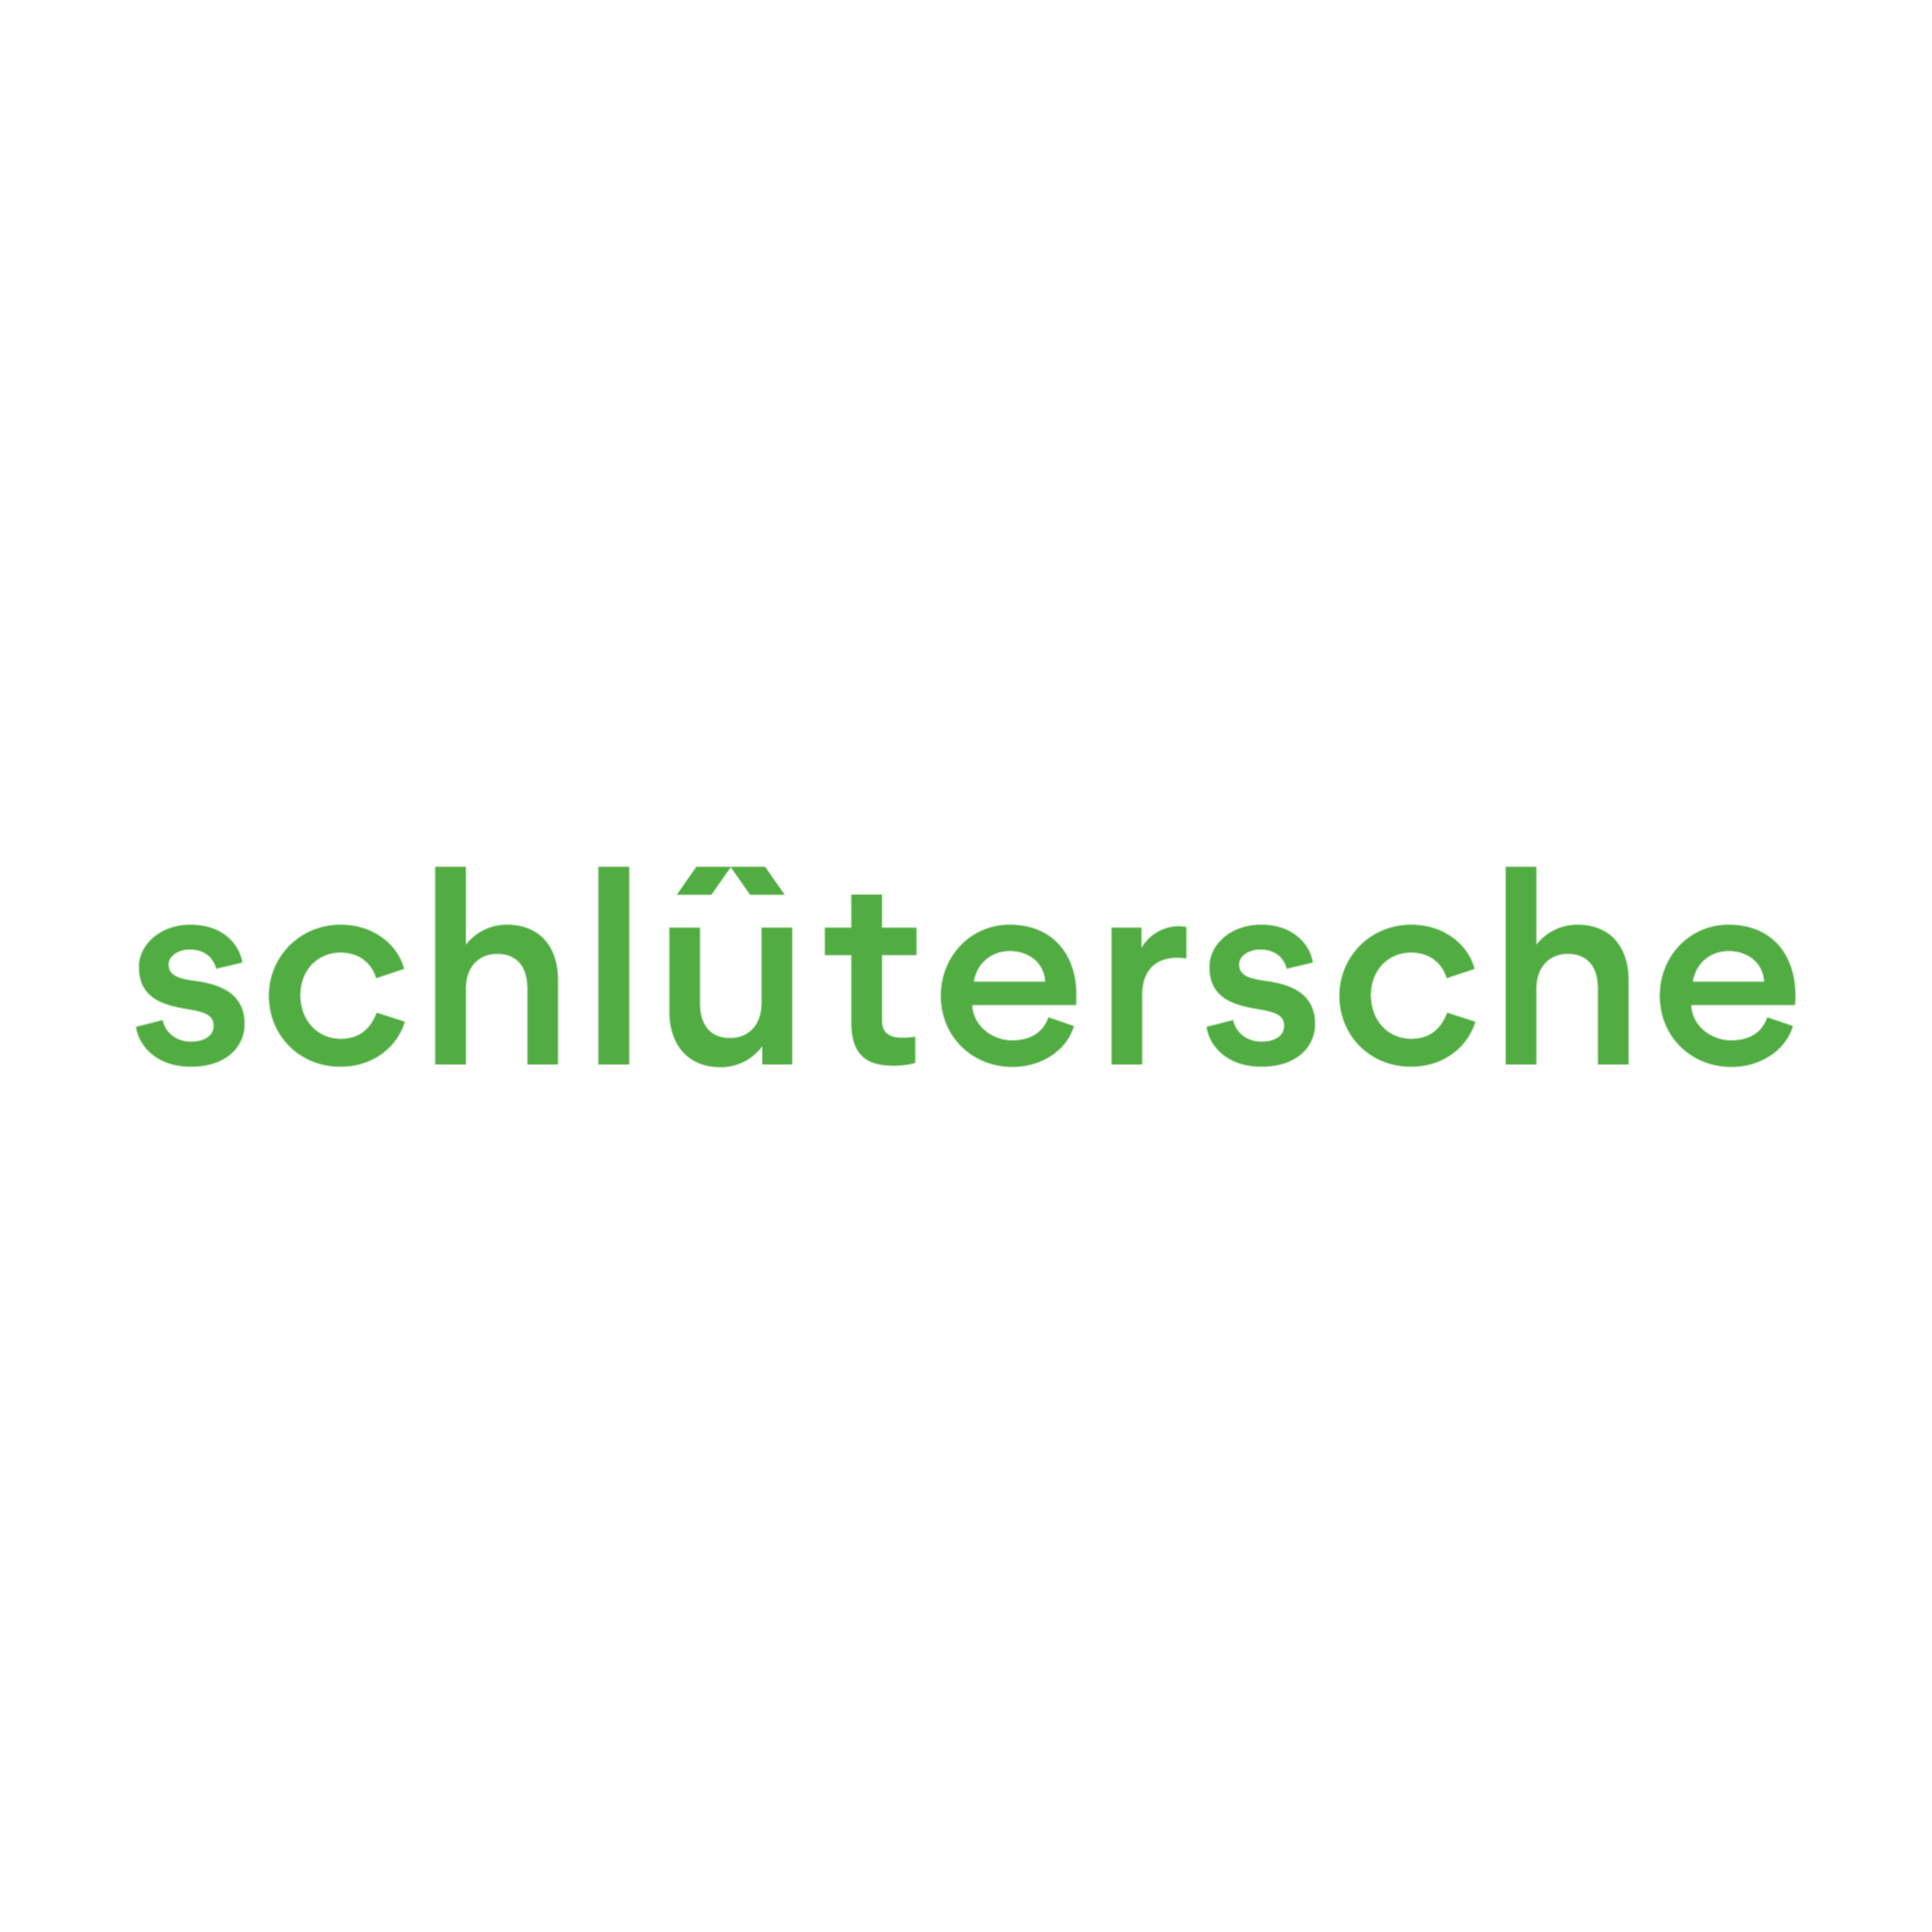 Schlütersche Mediengruppe in Oldenburg in Oldenburg - Logo